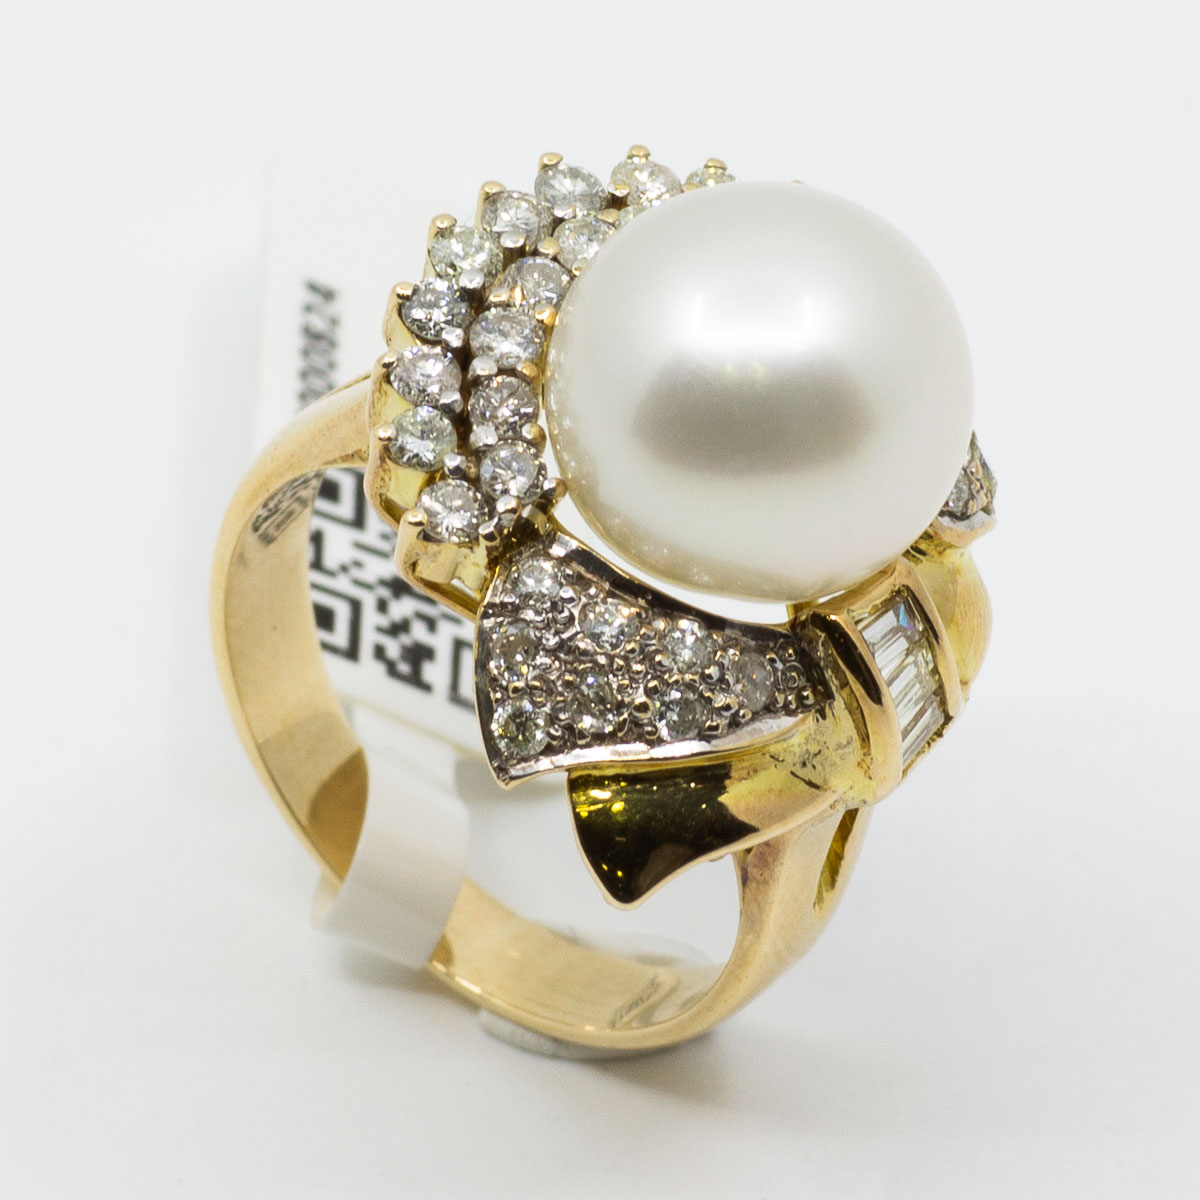 1 Ring 585/- Gebgold mit 33 Brillanten  und 3 Diamanten Trapez, gr.:53, 7,2 g